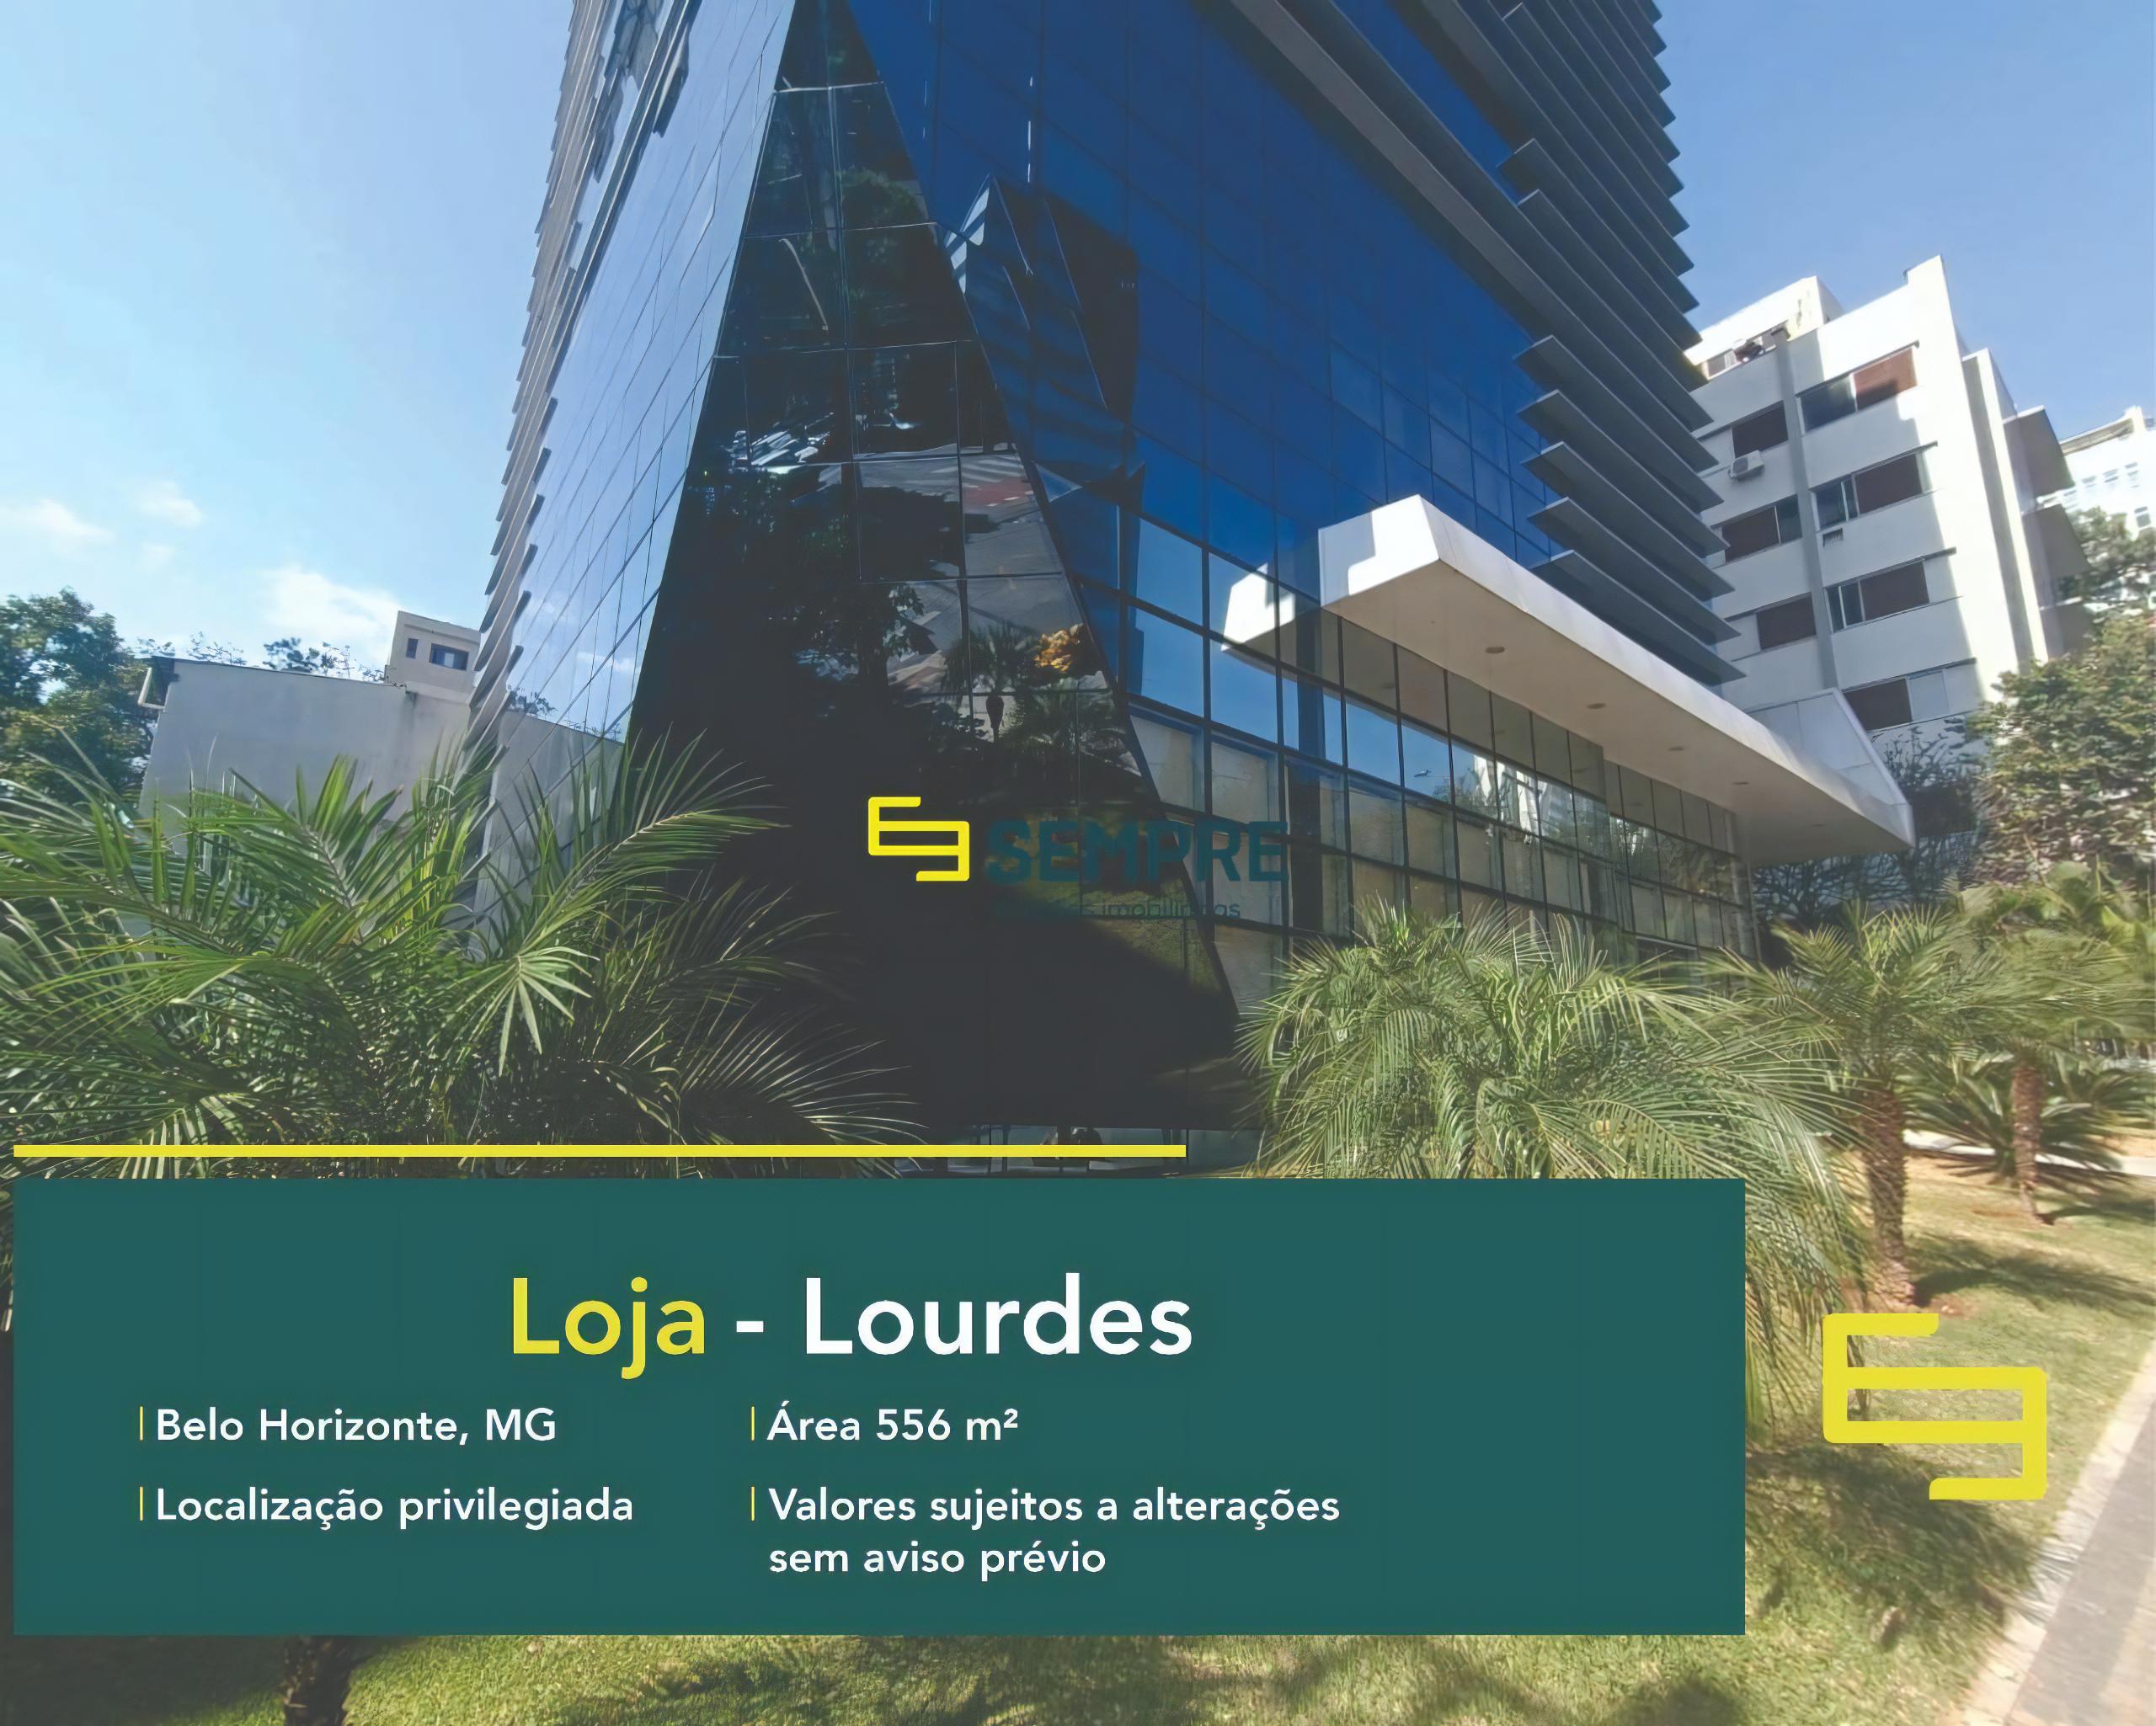 Loja no bairro Lourdes para locação em Belo Horizonte, excelente localização. O estabelecimento comercial conta com área de 556 m².